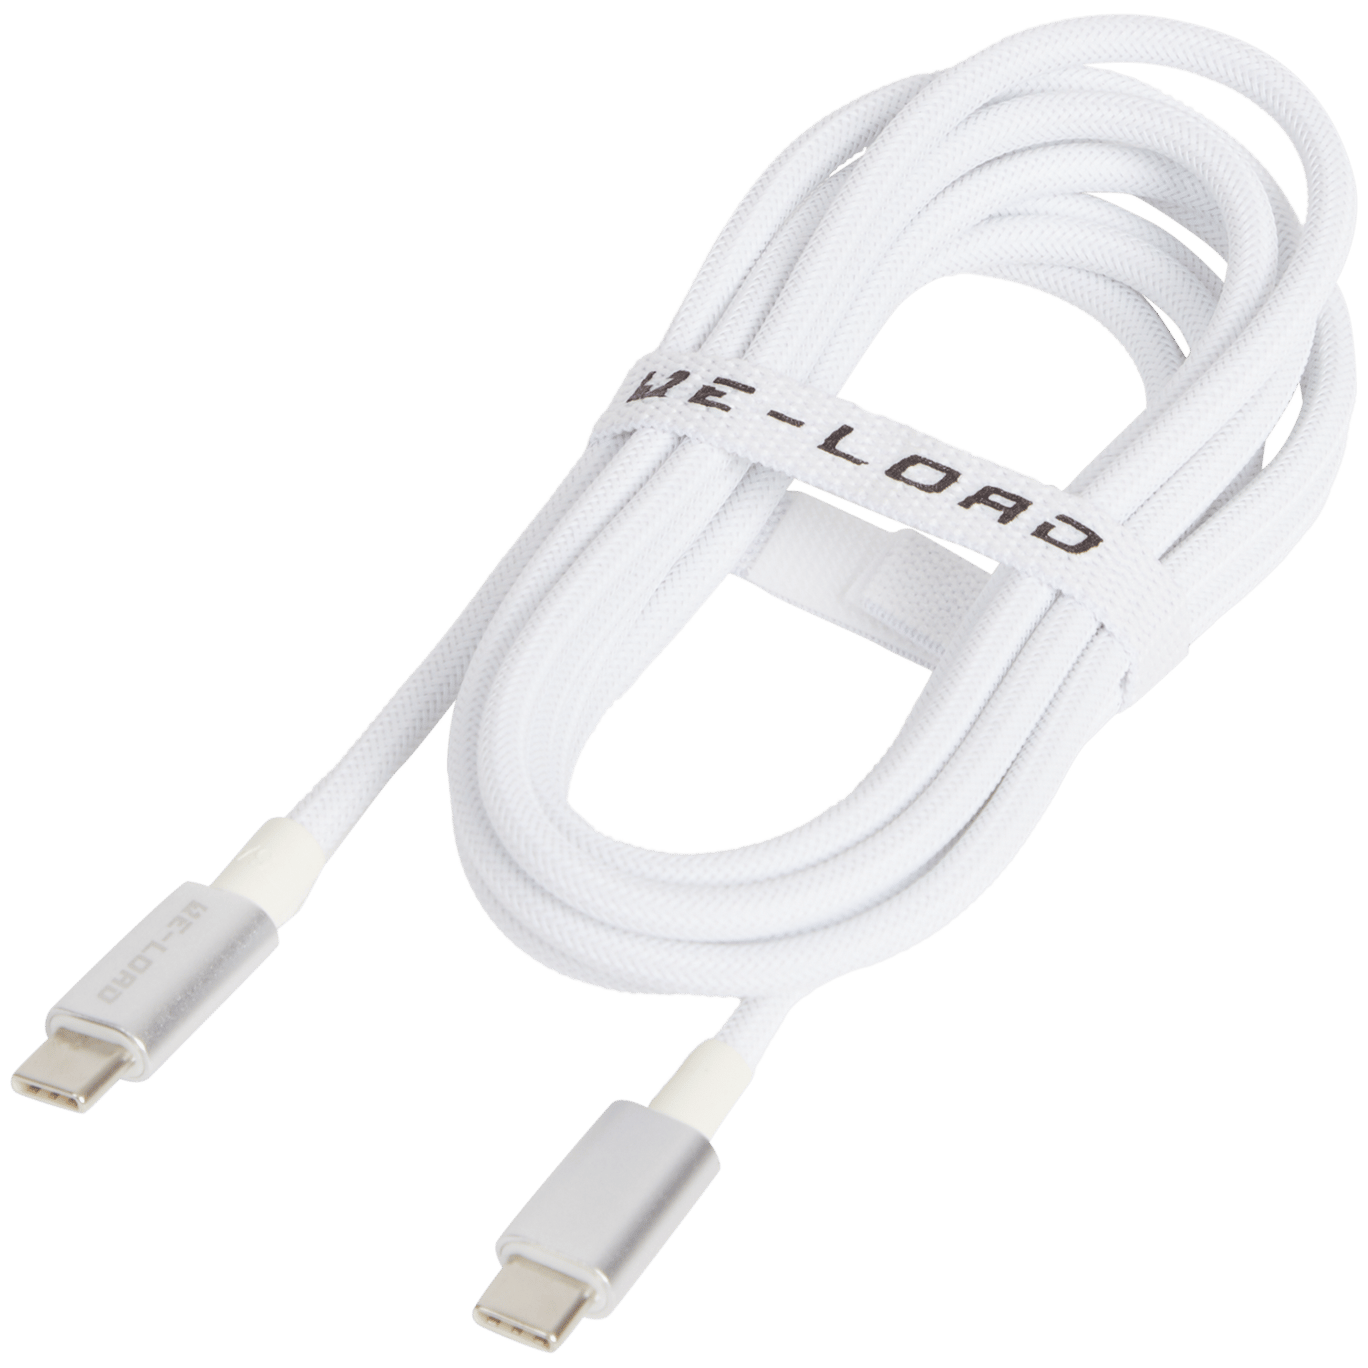 Cavo dati e ricarica rapida Re-load Da USB-C a USB-C 2.0